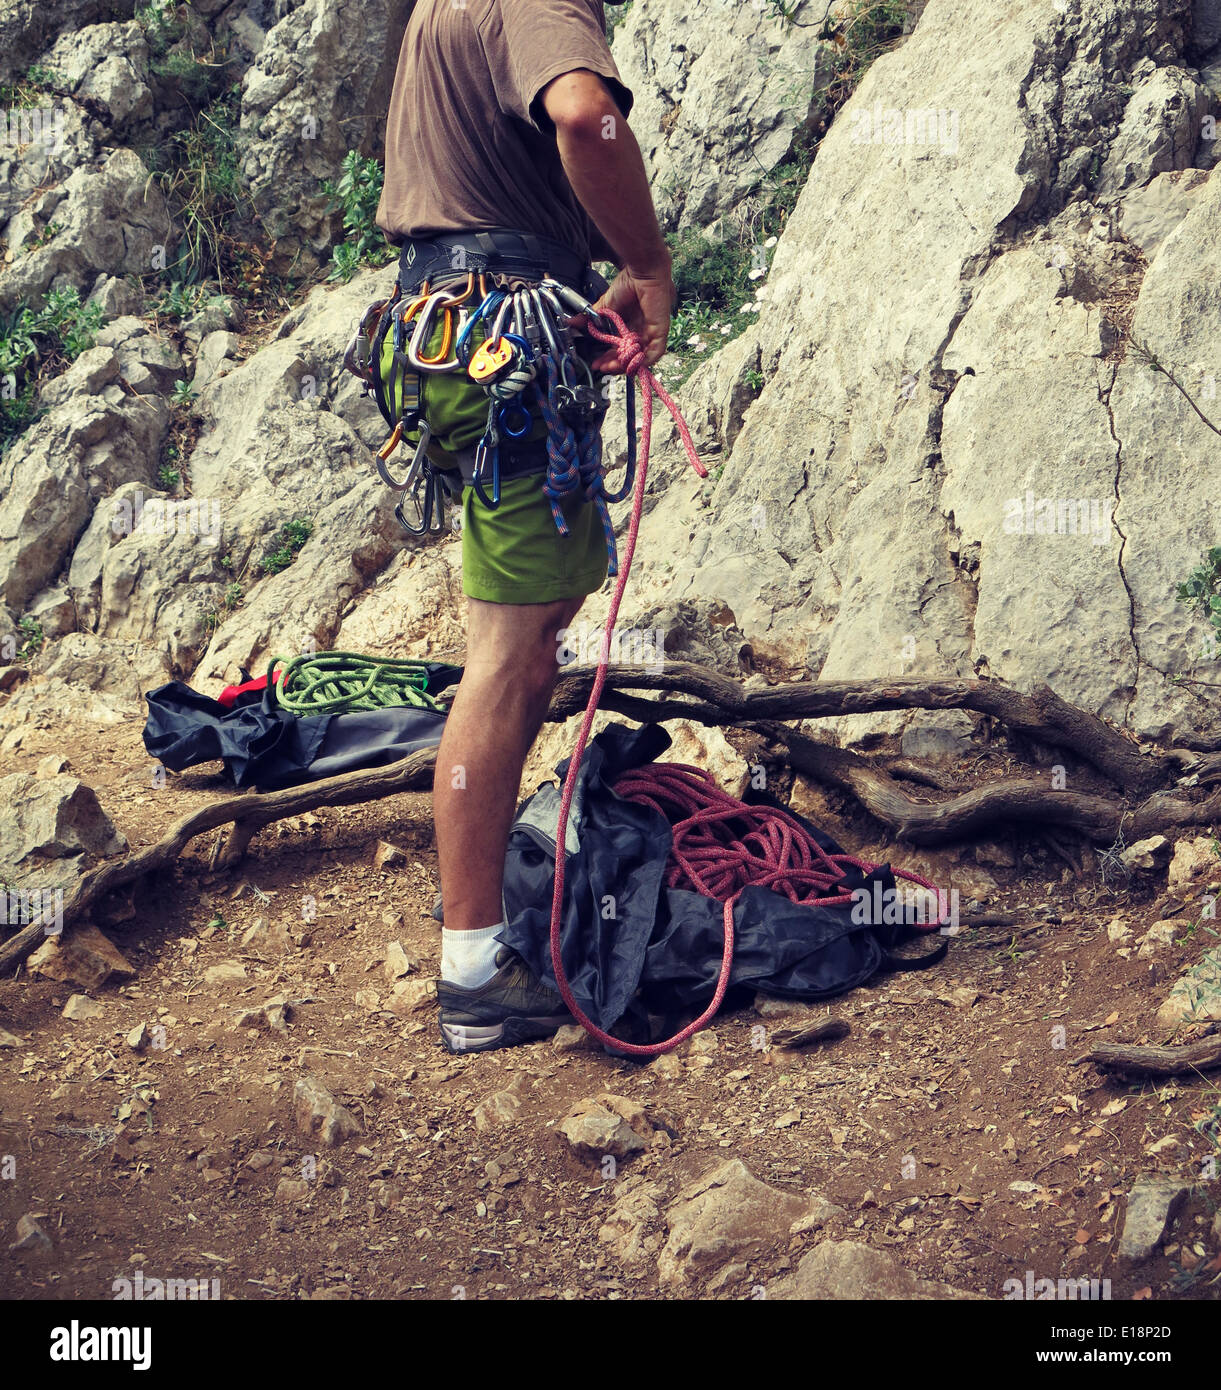 Natural rock climber Stock Photo